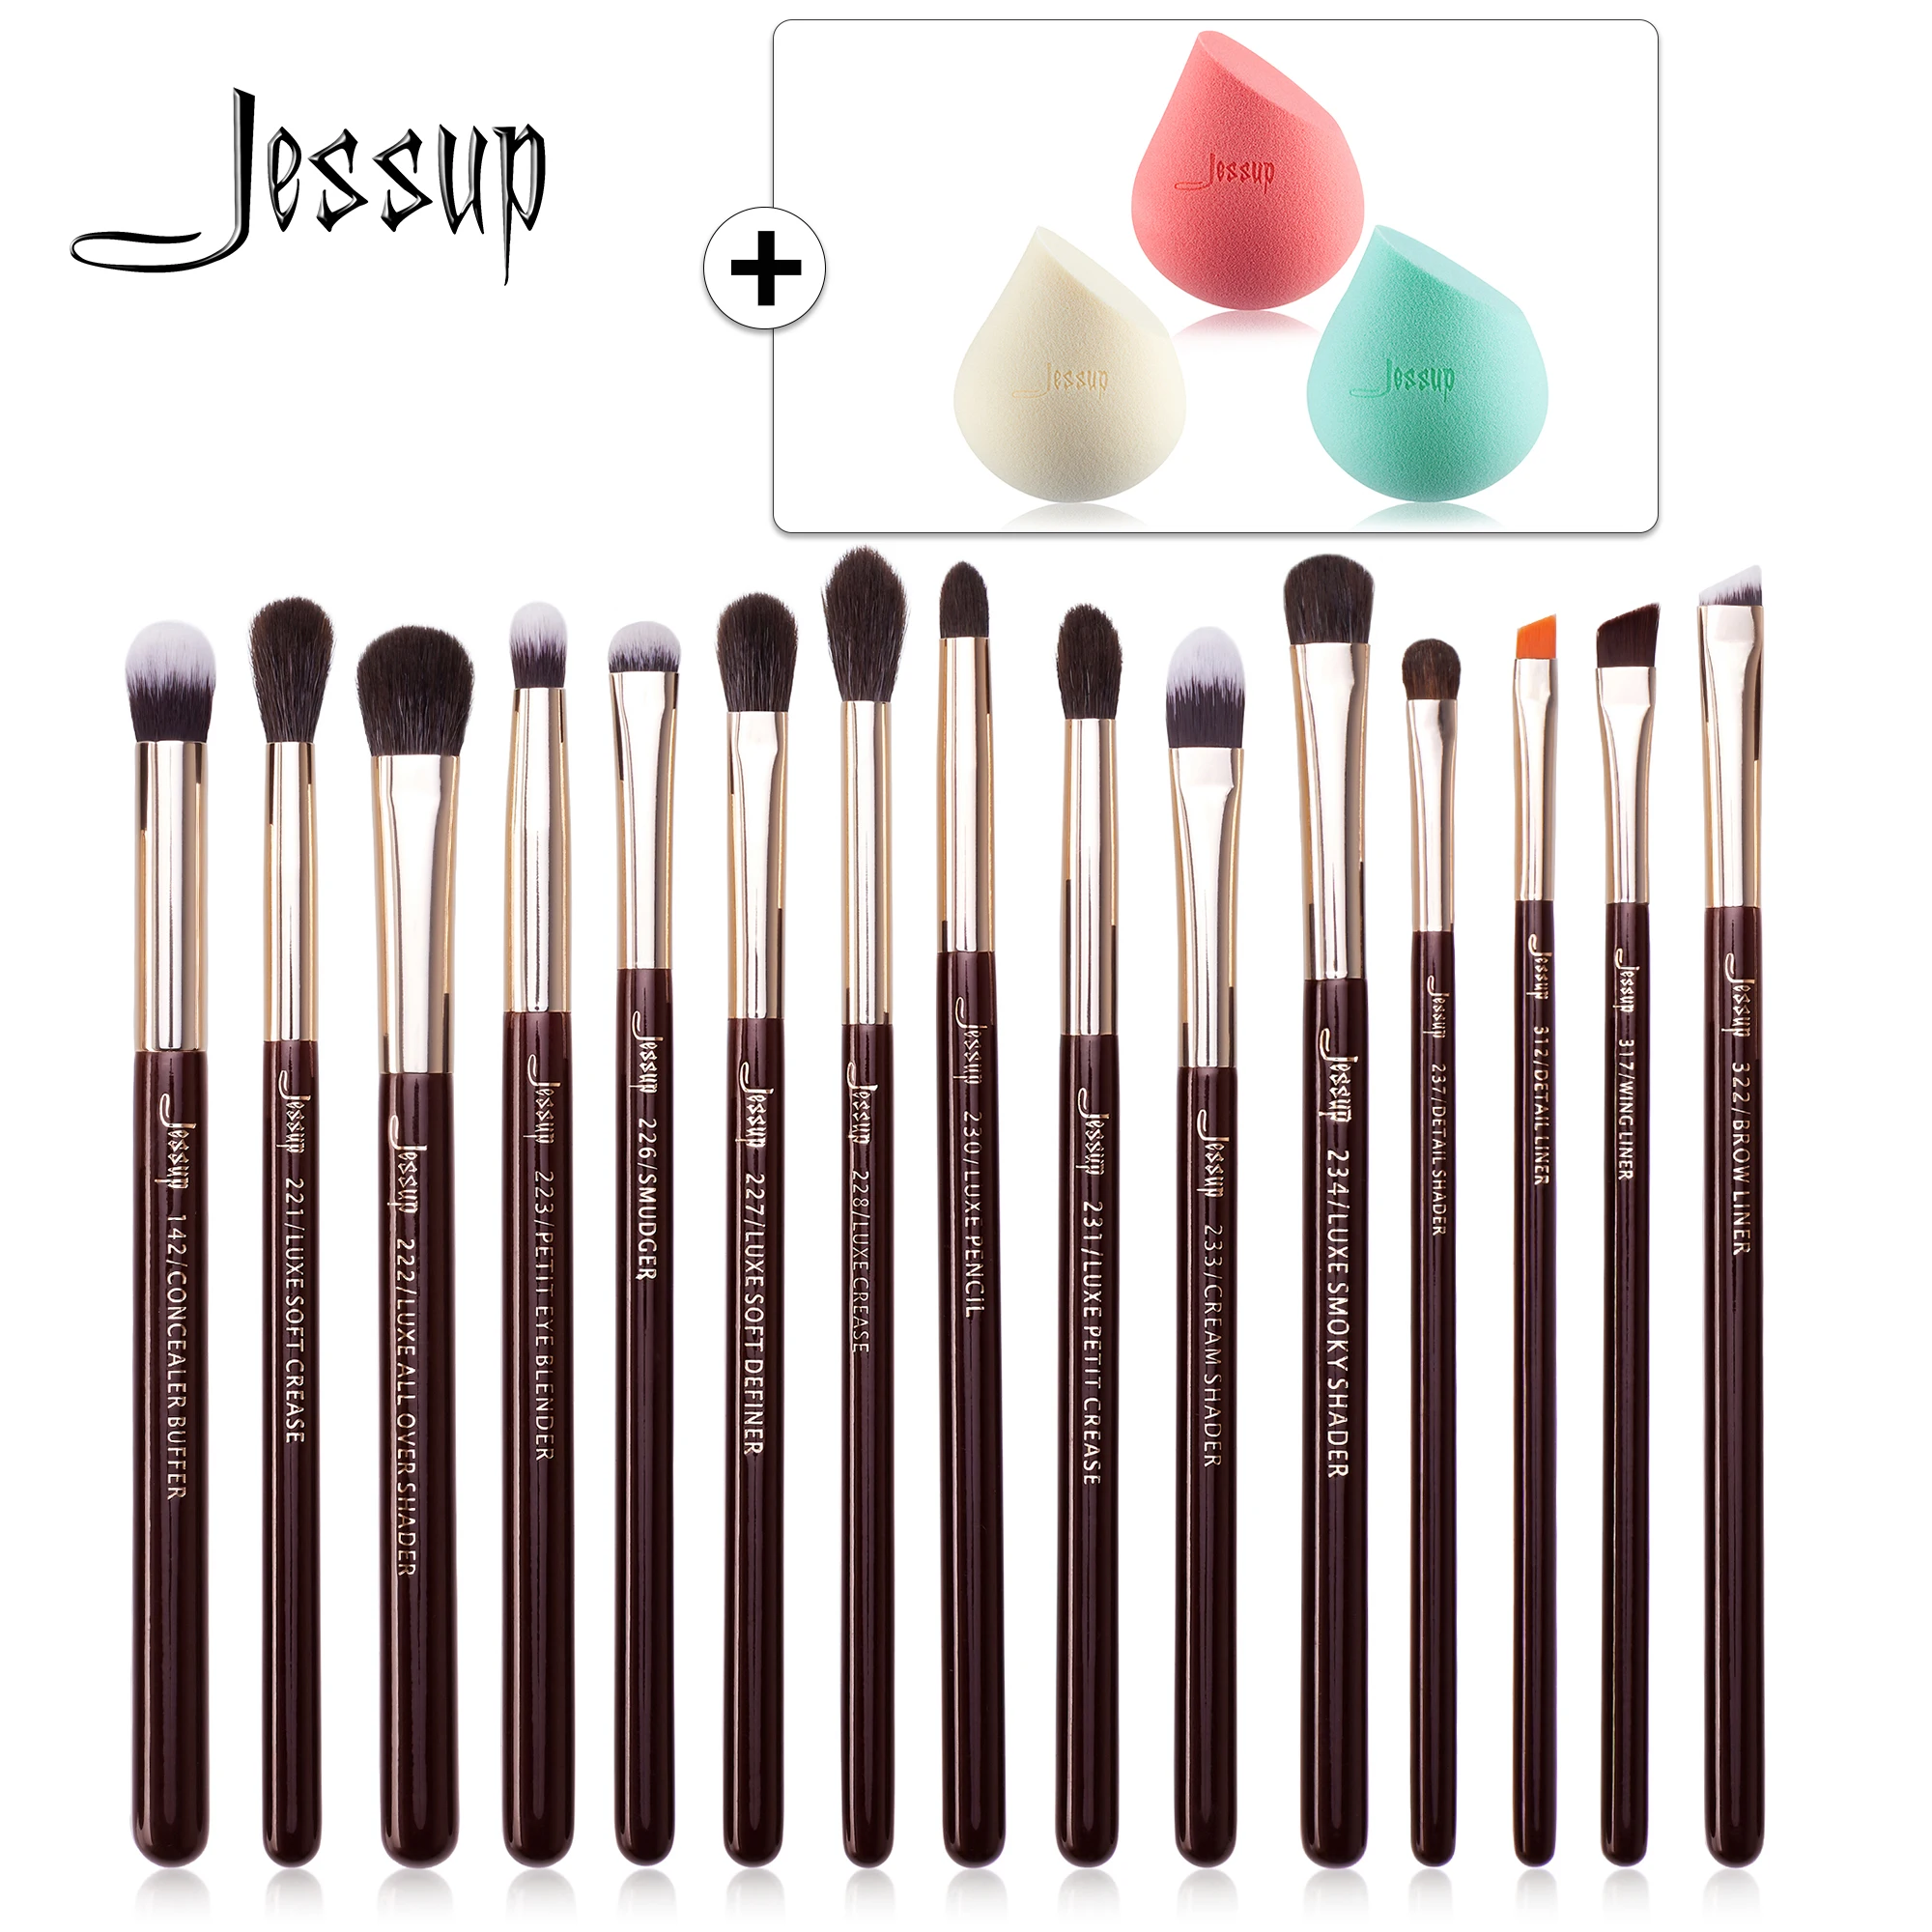 Jessup Makeup Brushes Set 15pcs Professional Eye Shadow Makeup Brush Kits Eyeshadow Eyeliner Blending Eyebrow Goat Hair 1